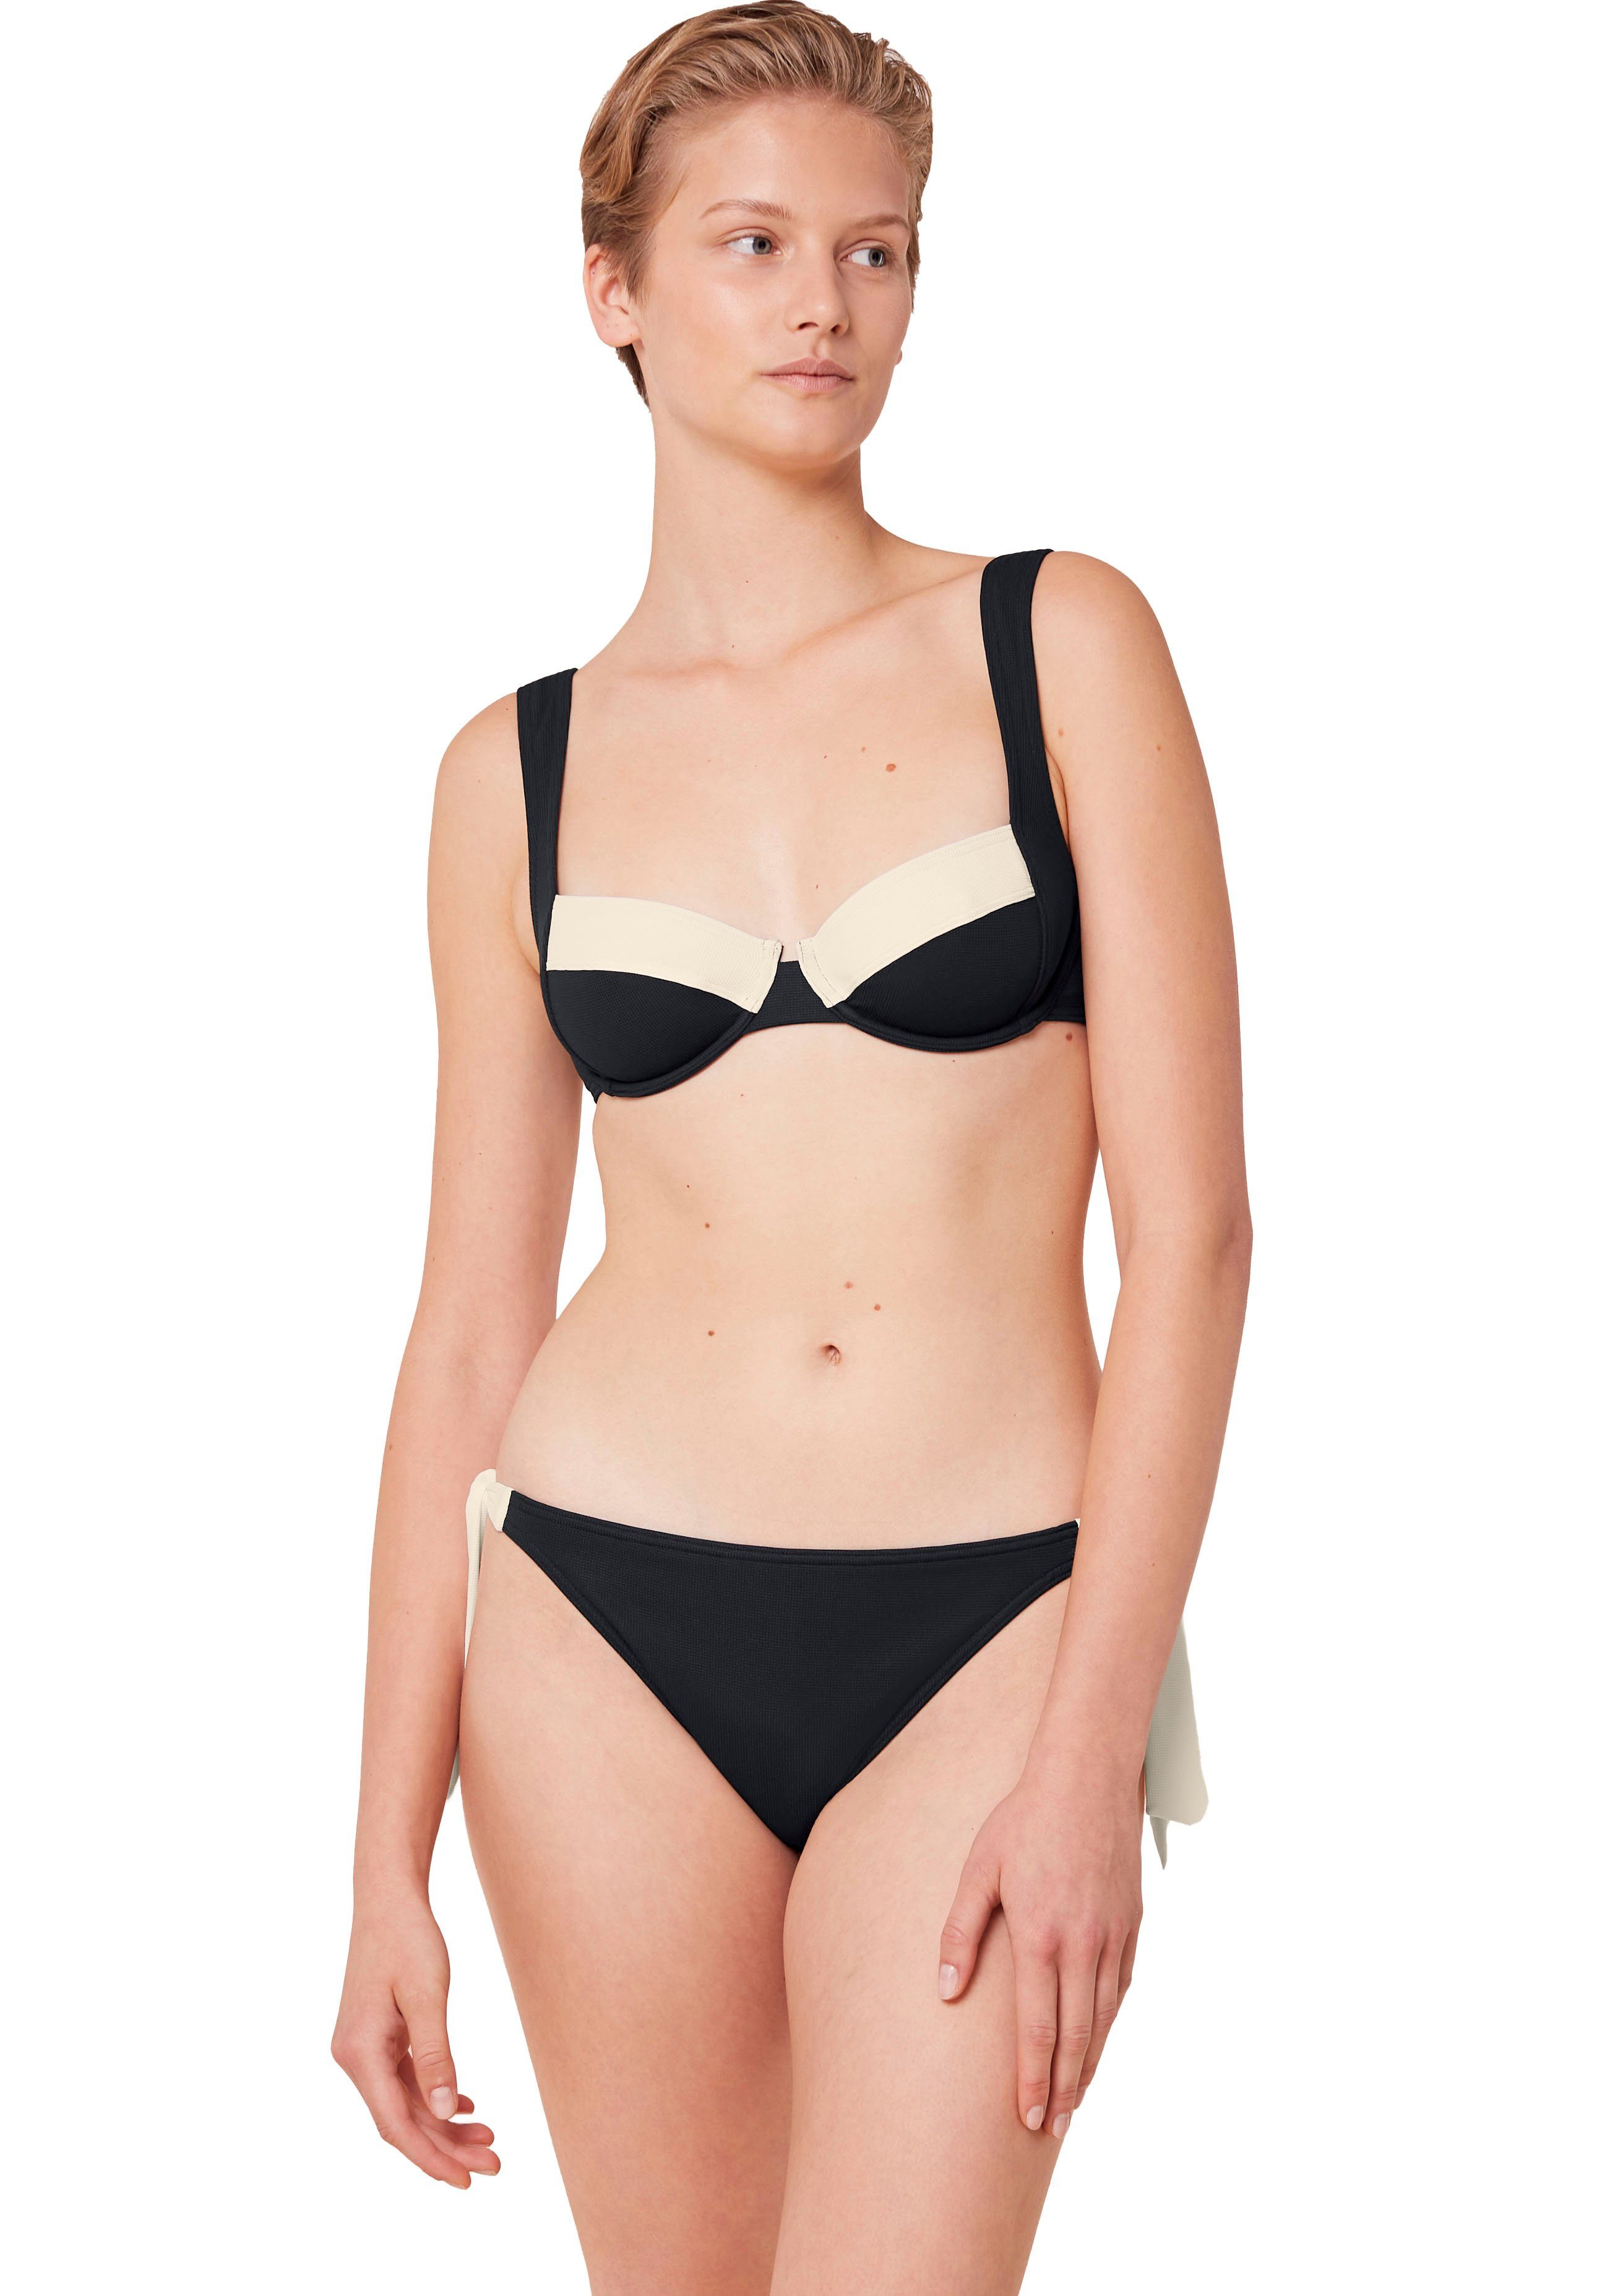 Triumph Balconette-Bikini-Top Summer Glow W 02 sd, Struktur-Piqué mit schmeichelhaft geschnittenem Dekolleté, zweifarbig